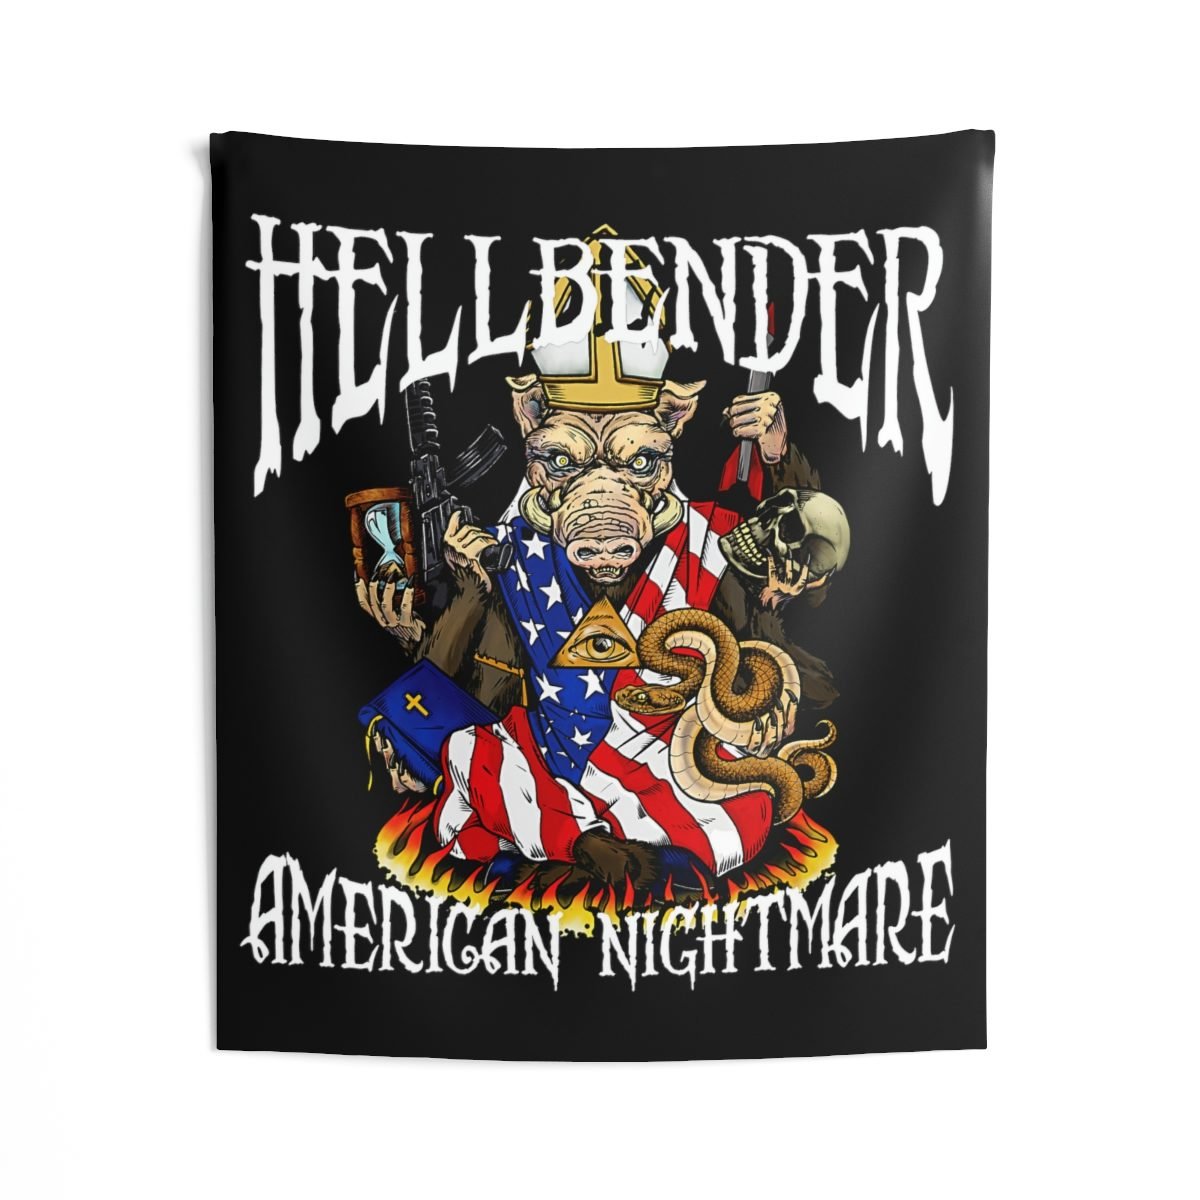 Hellbender – American NightmareIndoor Wall Tapestries